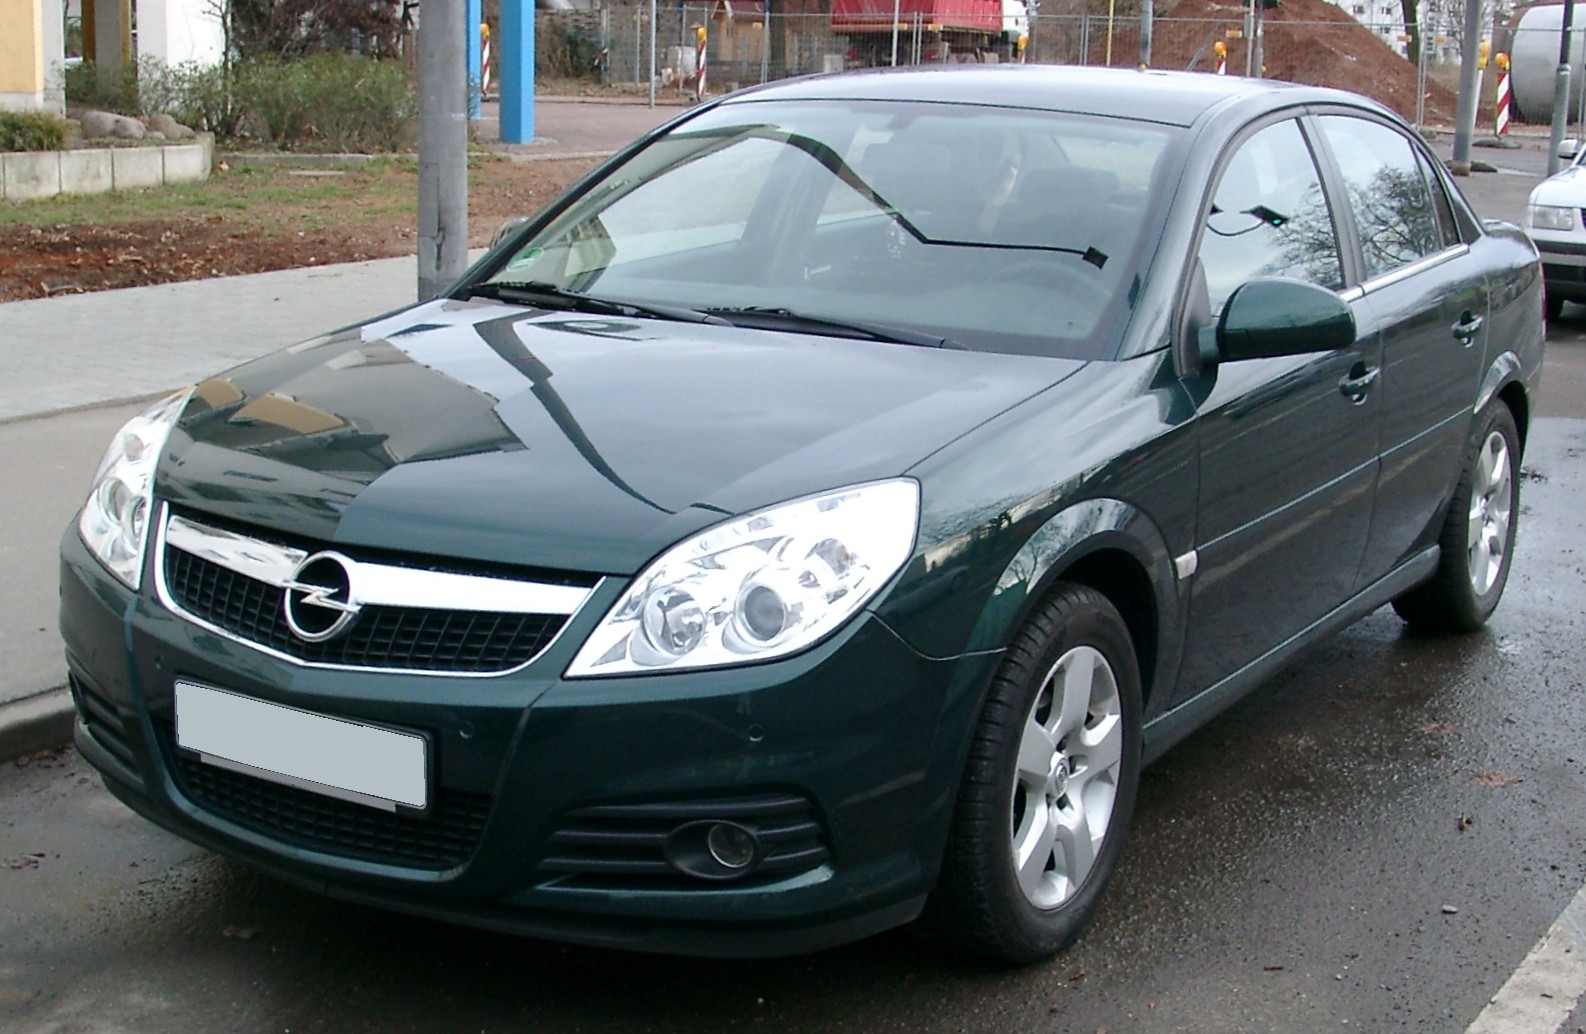 File:Opel Vectra C rear 20080331.jpg - Wikimedia Commons